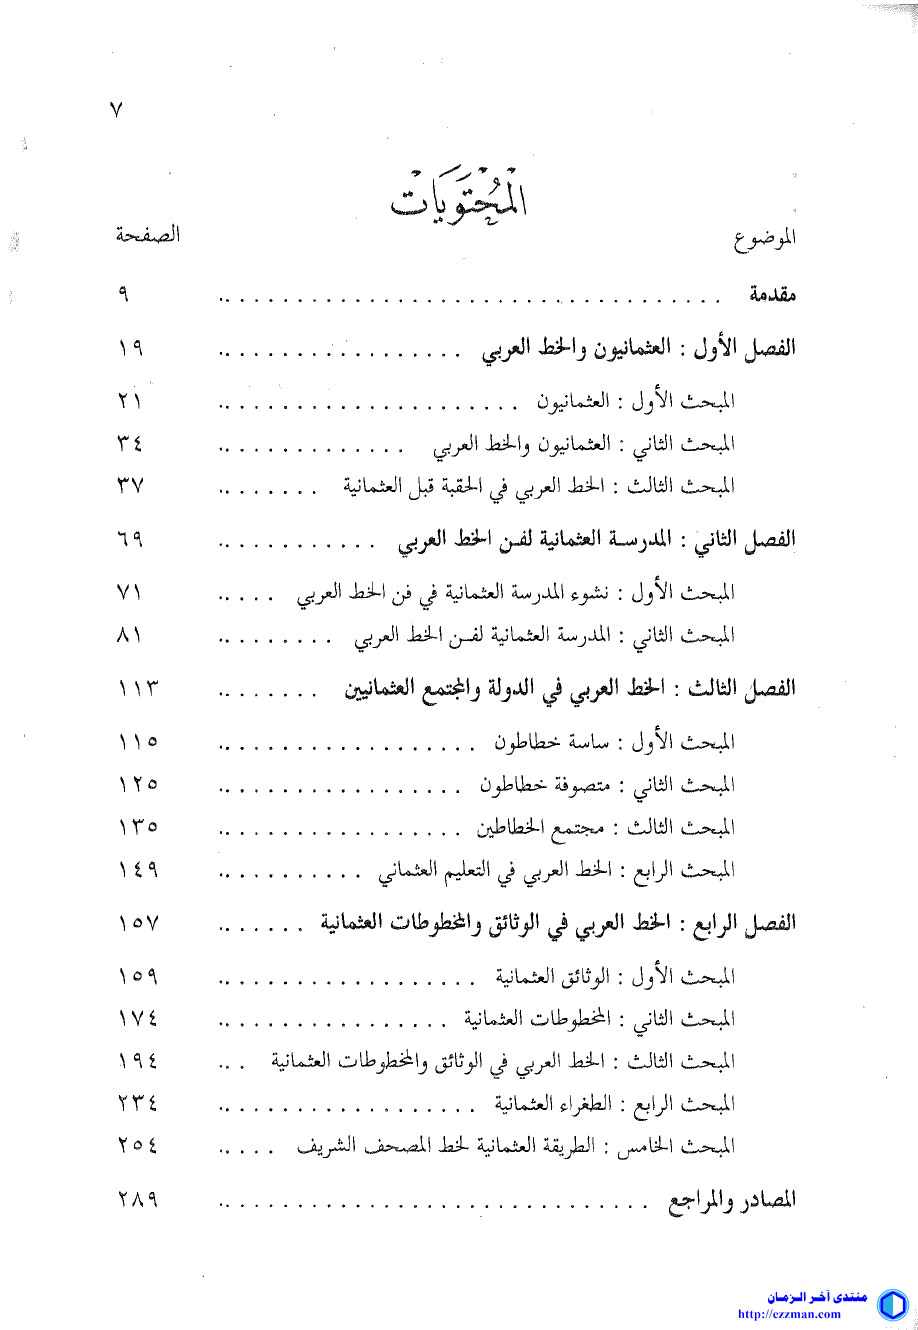 المدرسة العثمانية الخط العربي